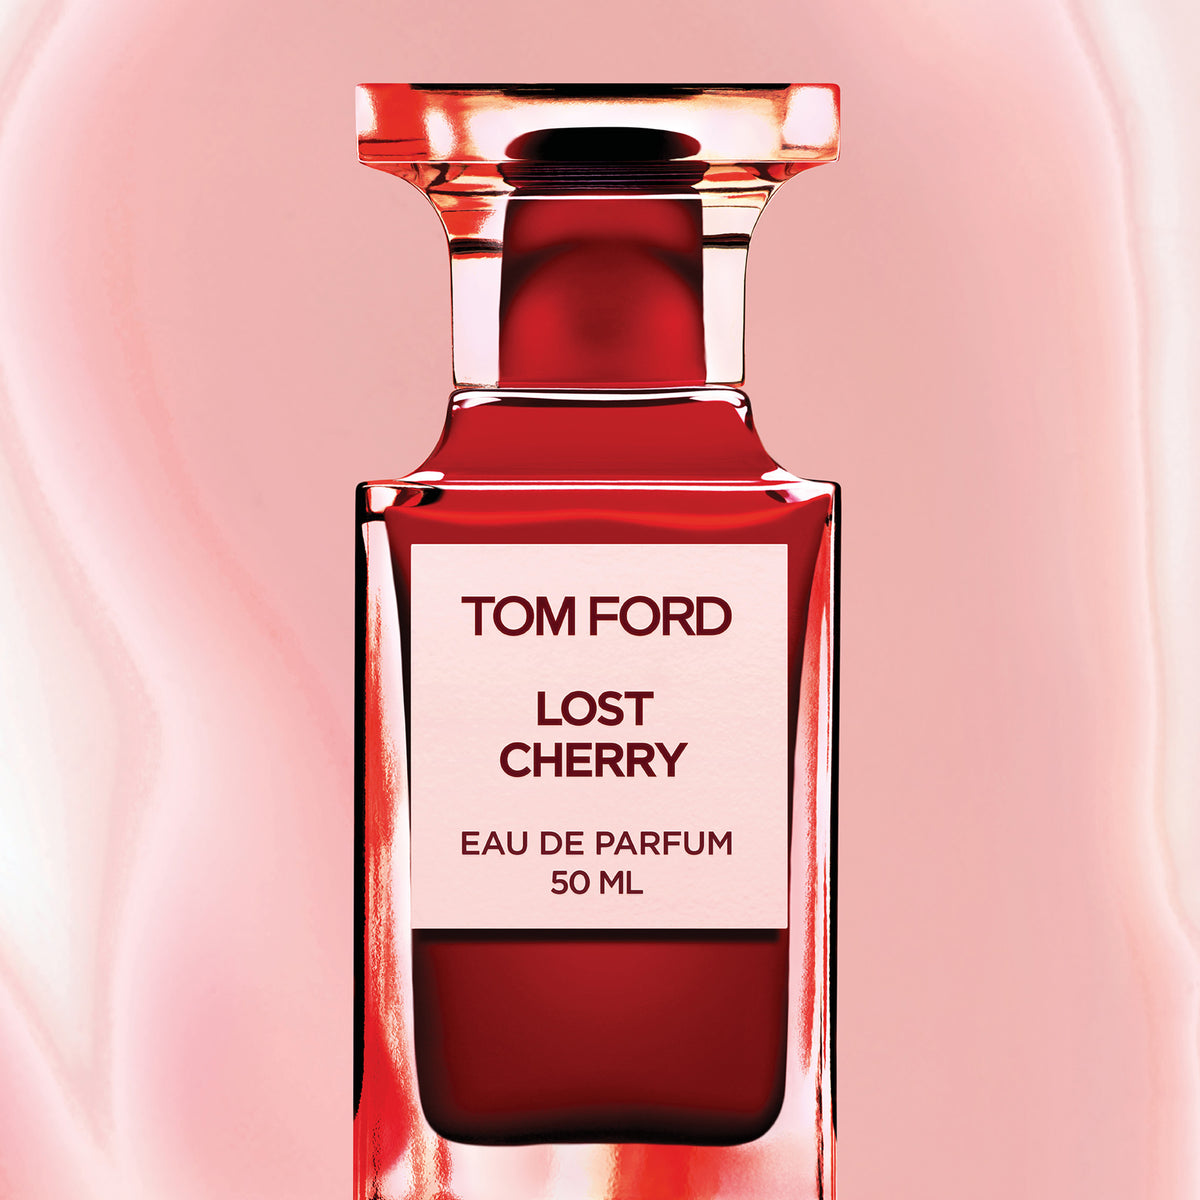 Tom Ford Lost Cherry Eau de Parfum Review & Photos